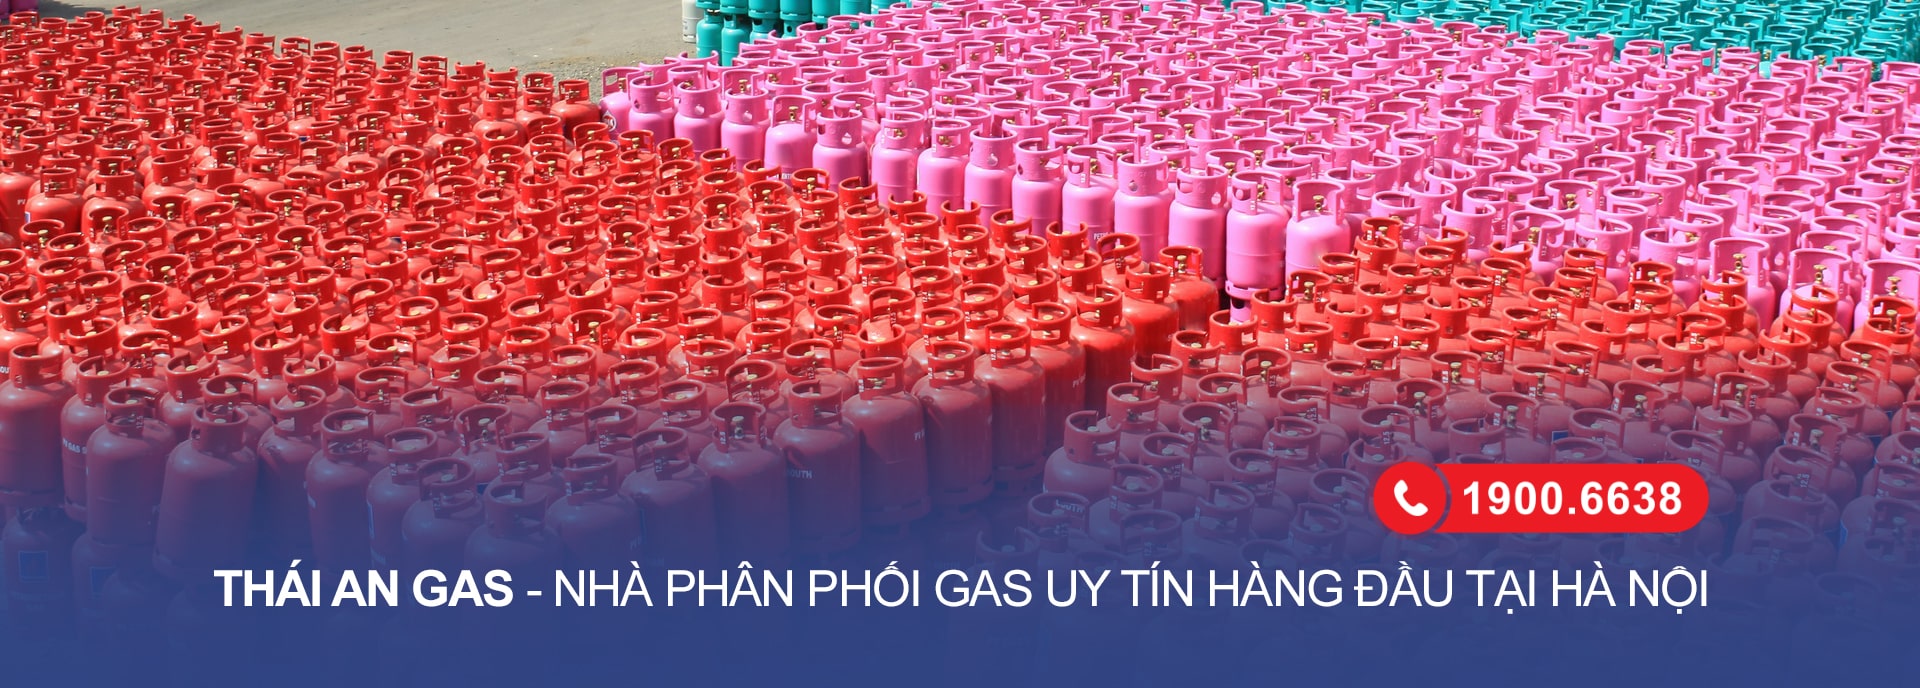 Nhà phân phối gas Thái An - Doanh nghiệp gas uy tín hàng đầu tại Hà Nội